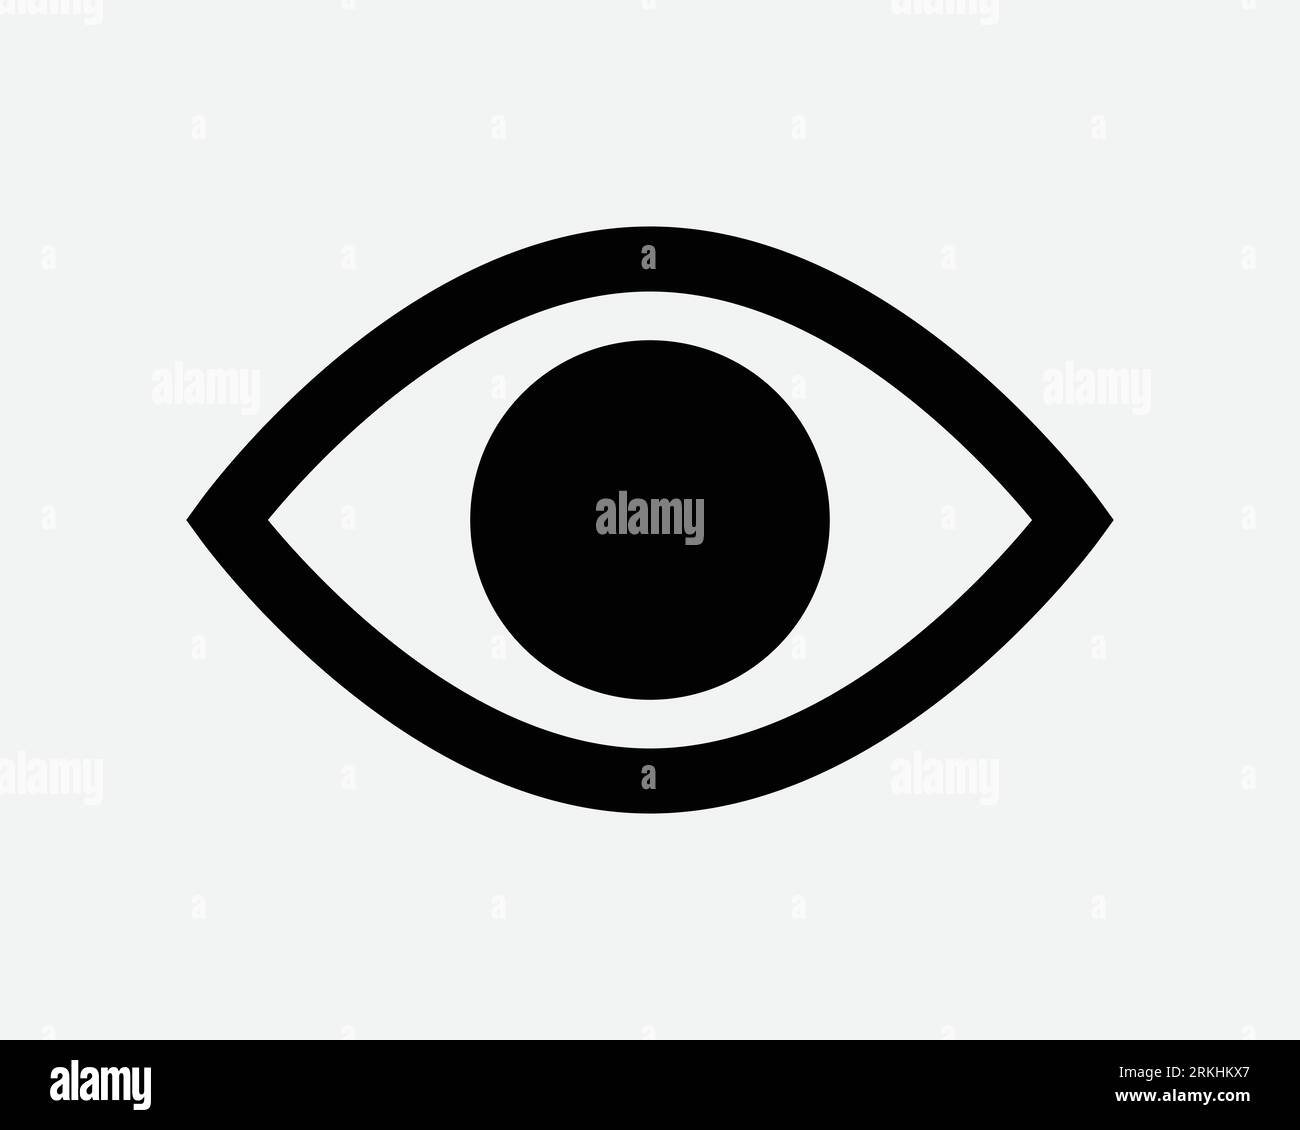 Icona occhio occhio occhio occhio umano vedere vista vista vista vista vista obiettivo ottica ottica ottica illuminati che guarda il simbolo del segno vettoriale della forma del contorno bianco nero Illustrazione Vettoriale